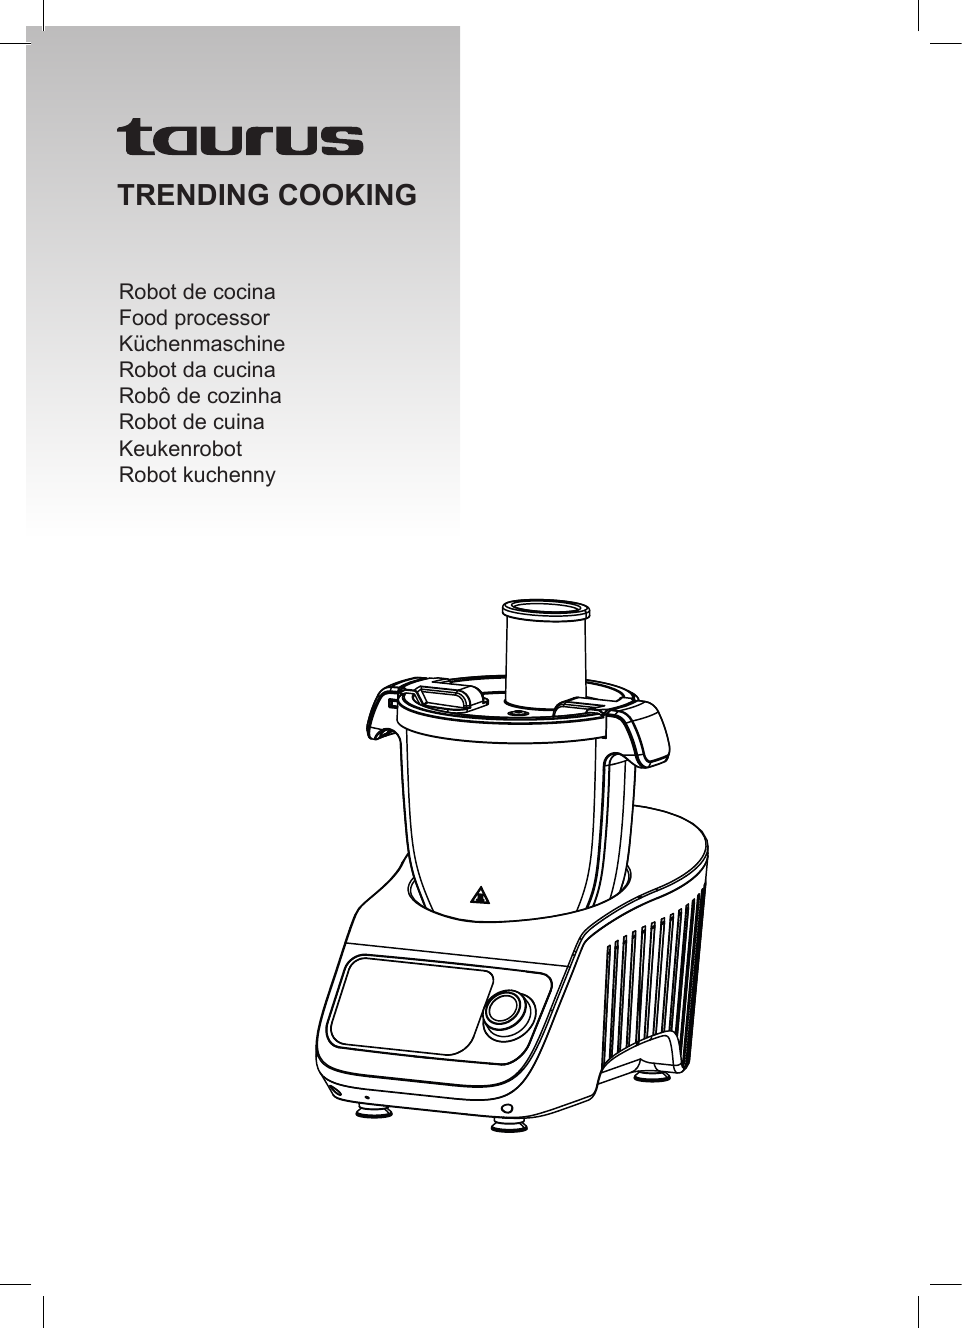 Spatola al silicone per robot da cucina Trending Cooking